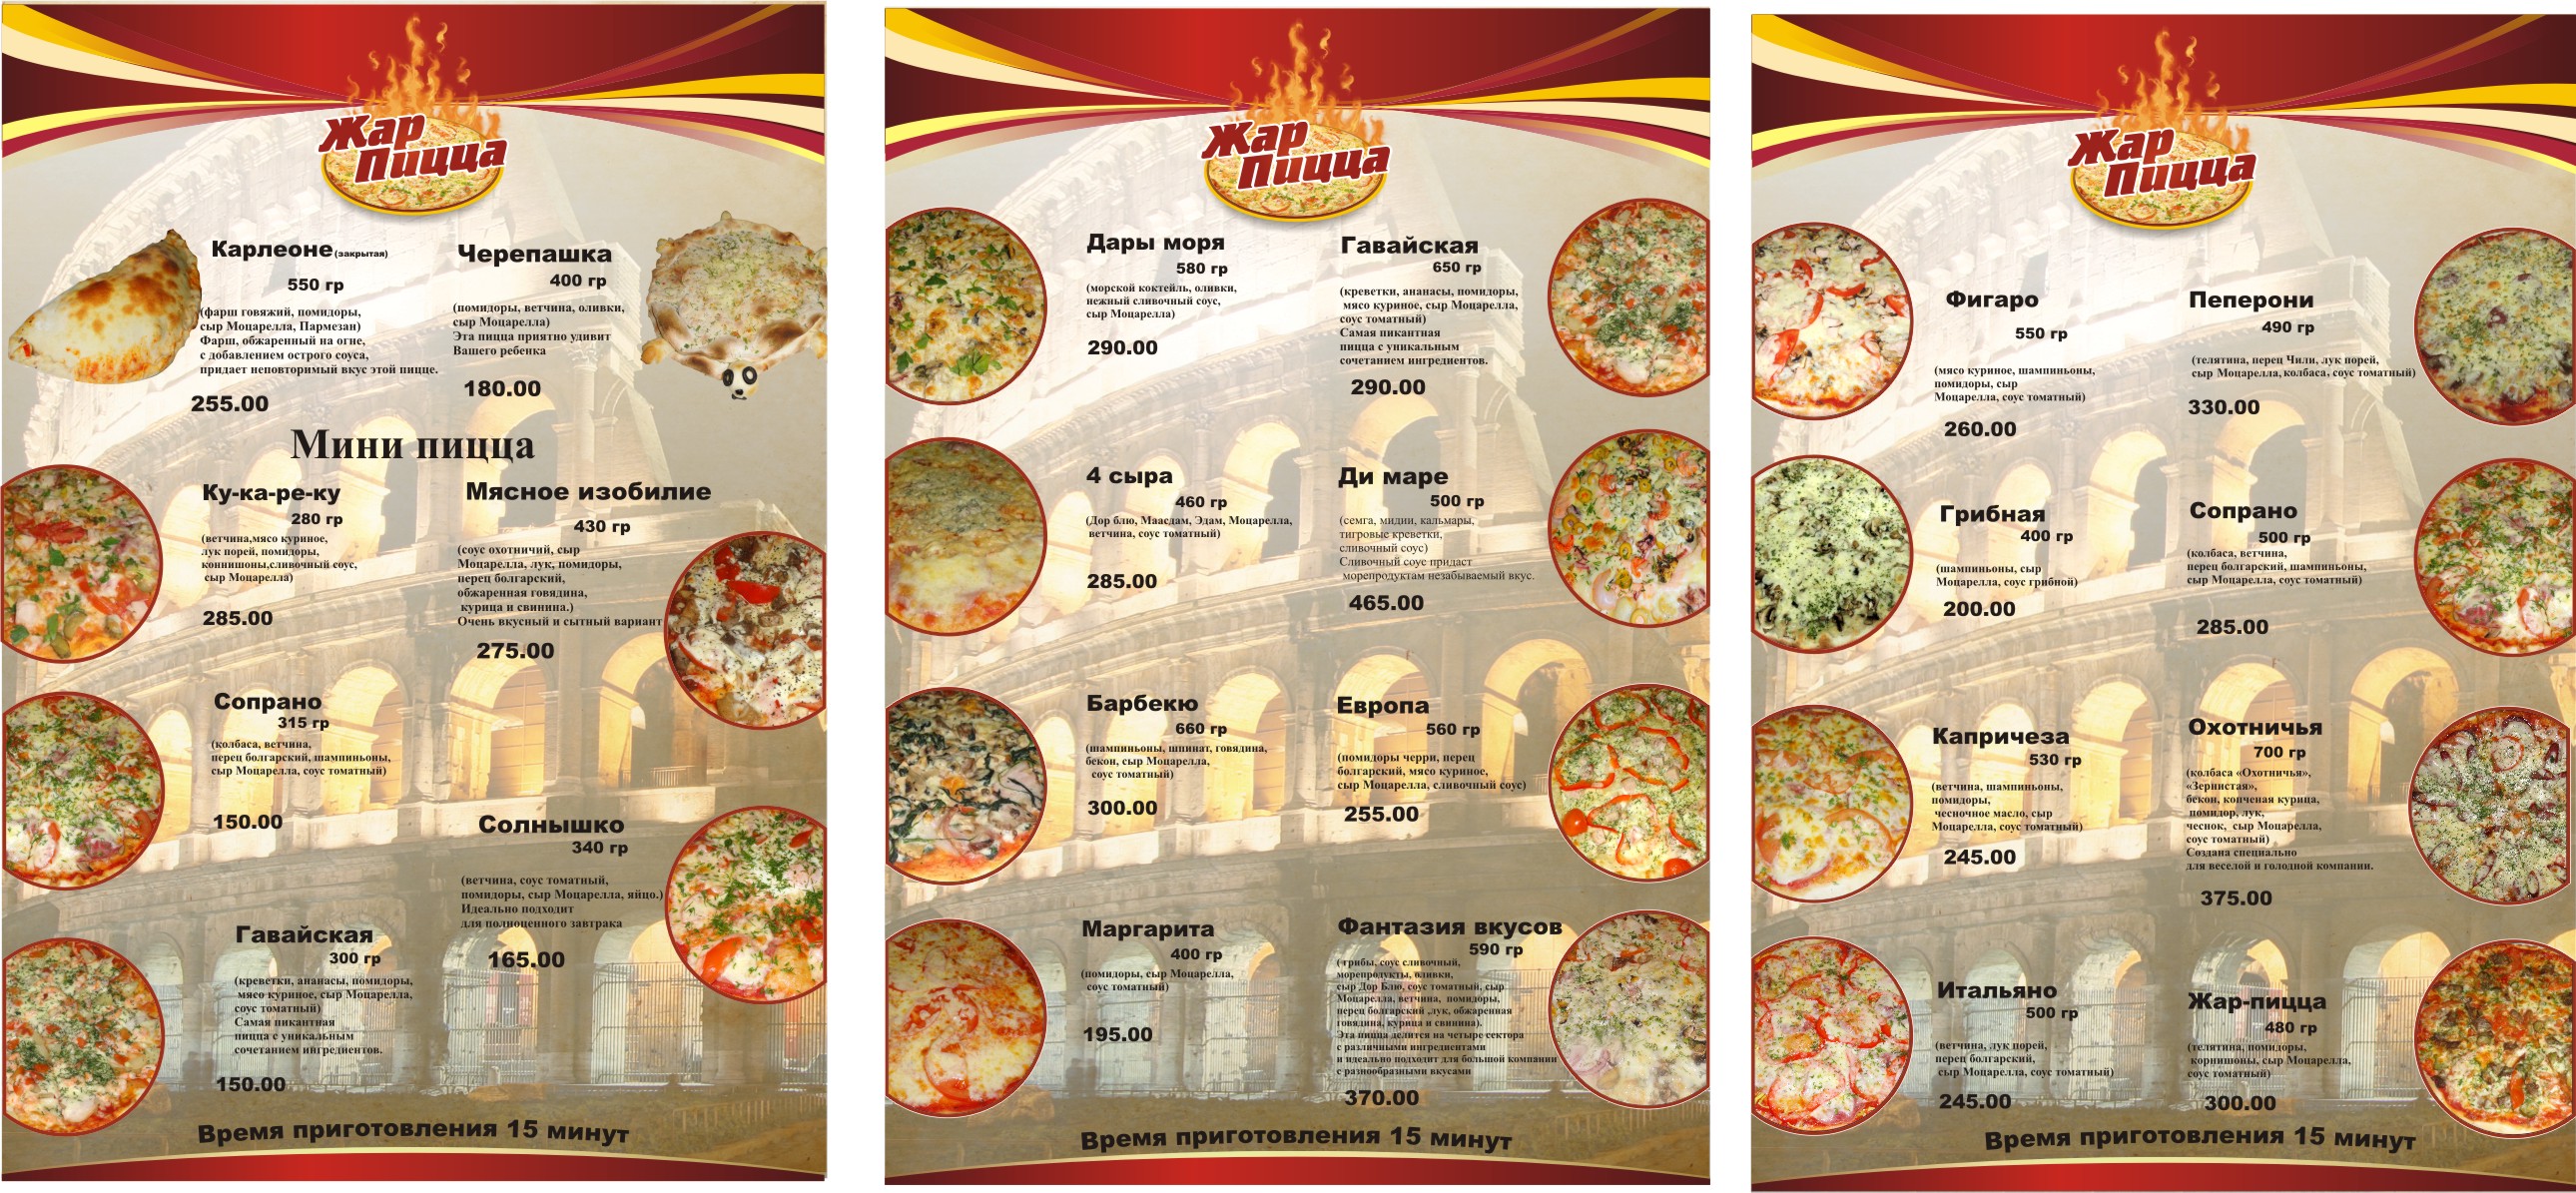 тамбов жар пицца на советской режим работы фото 25